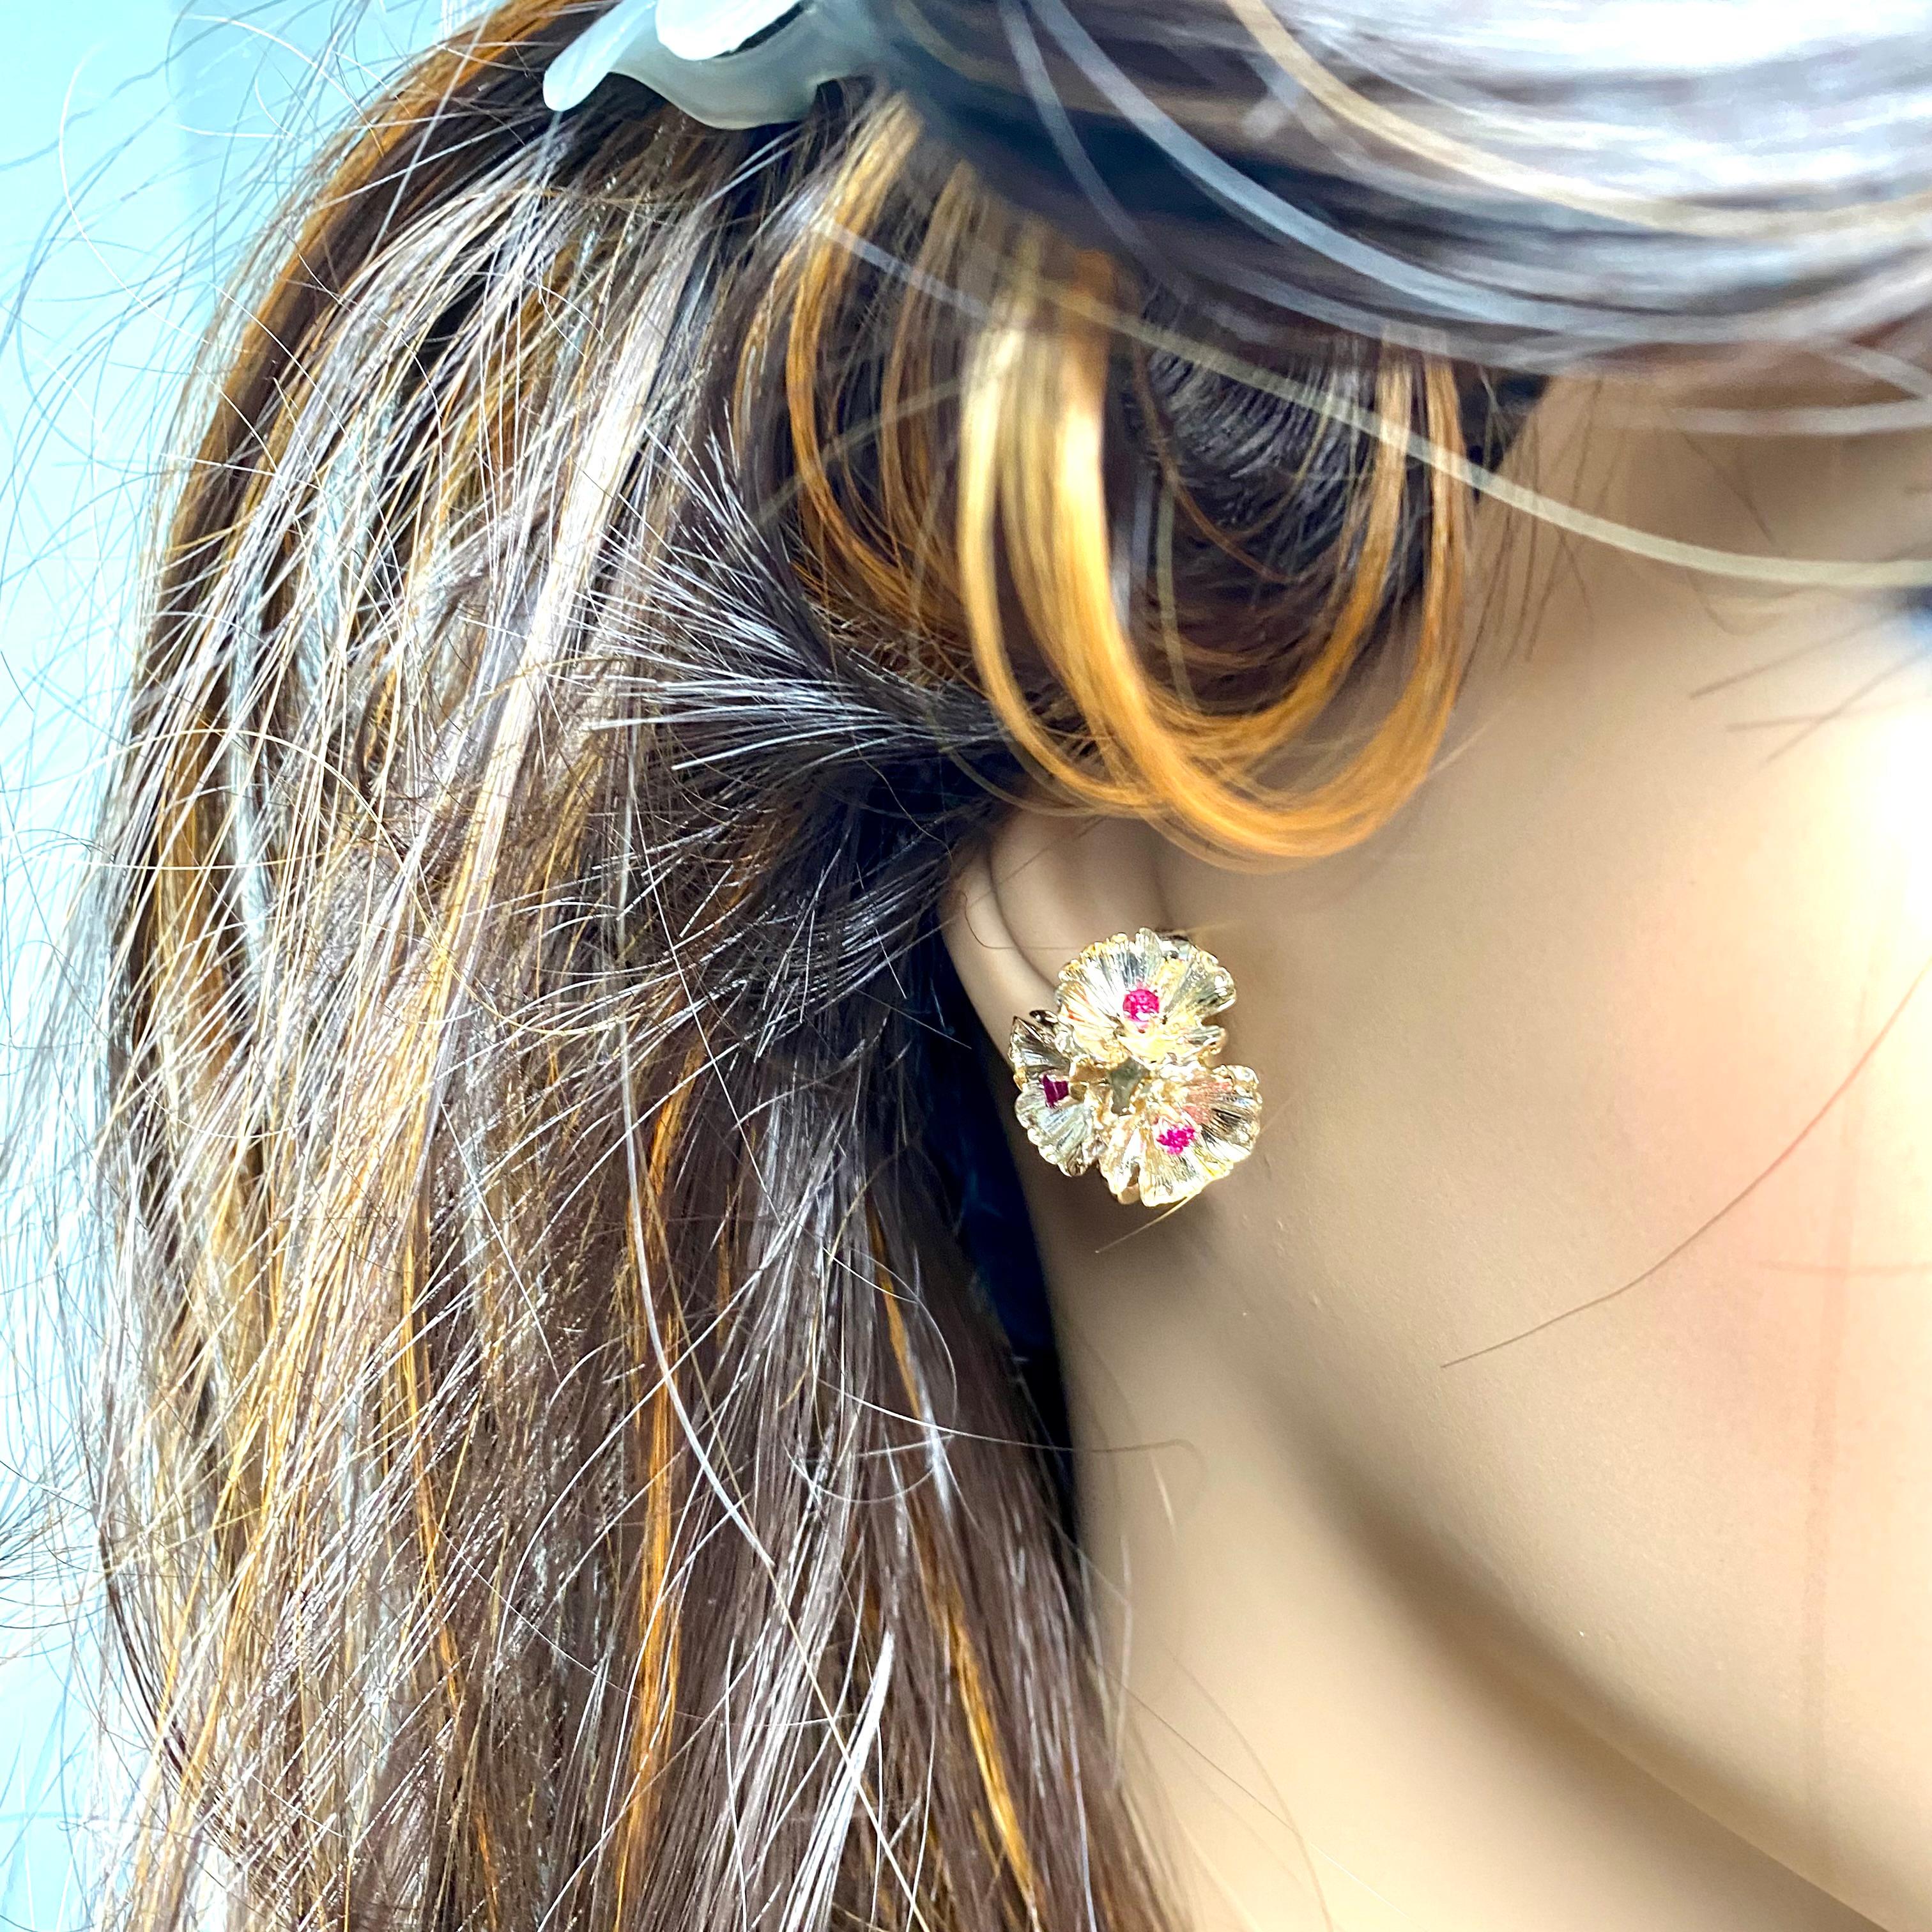 tiffany ruby earrings